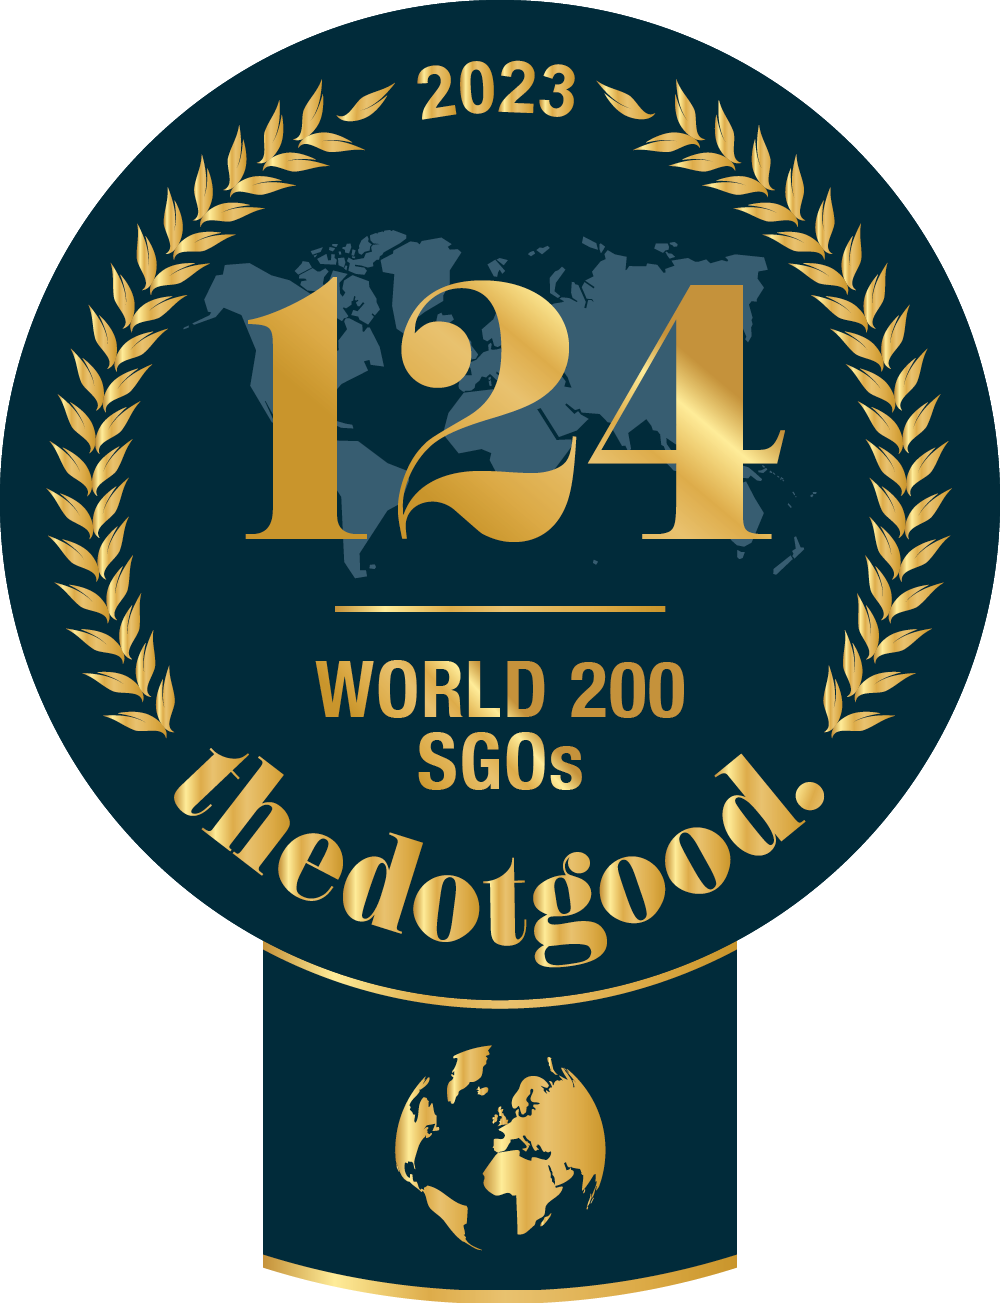 INJAZ Al-Arab is world ranked on thedotgood.